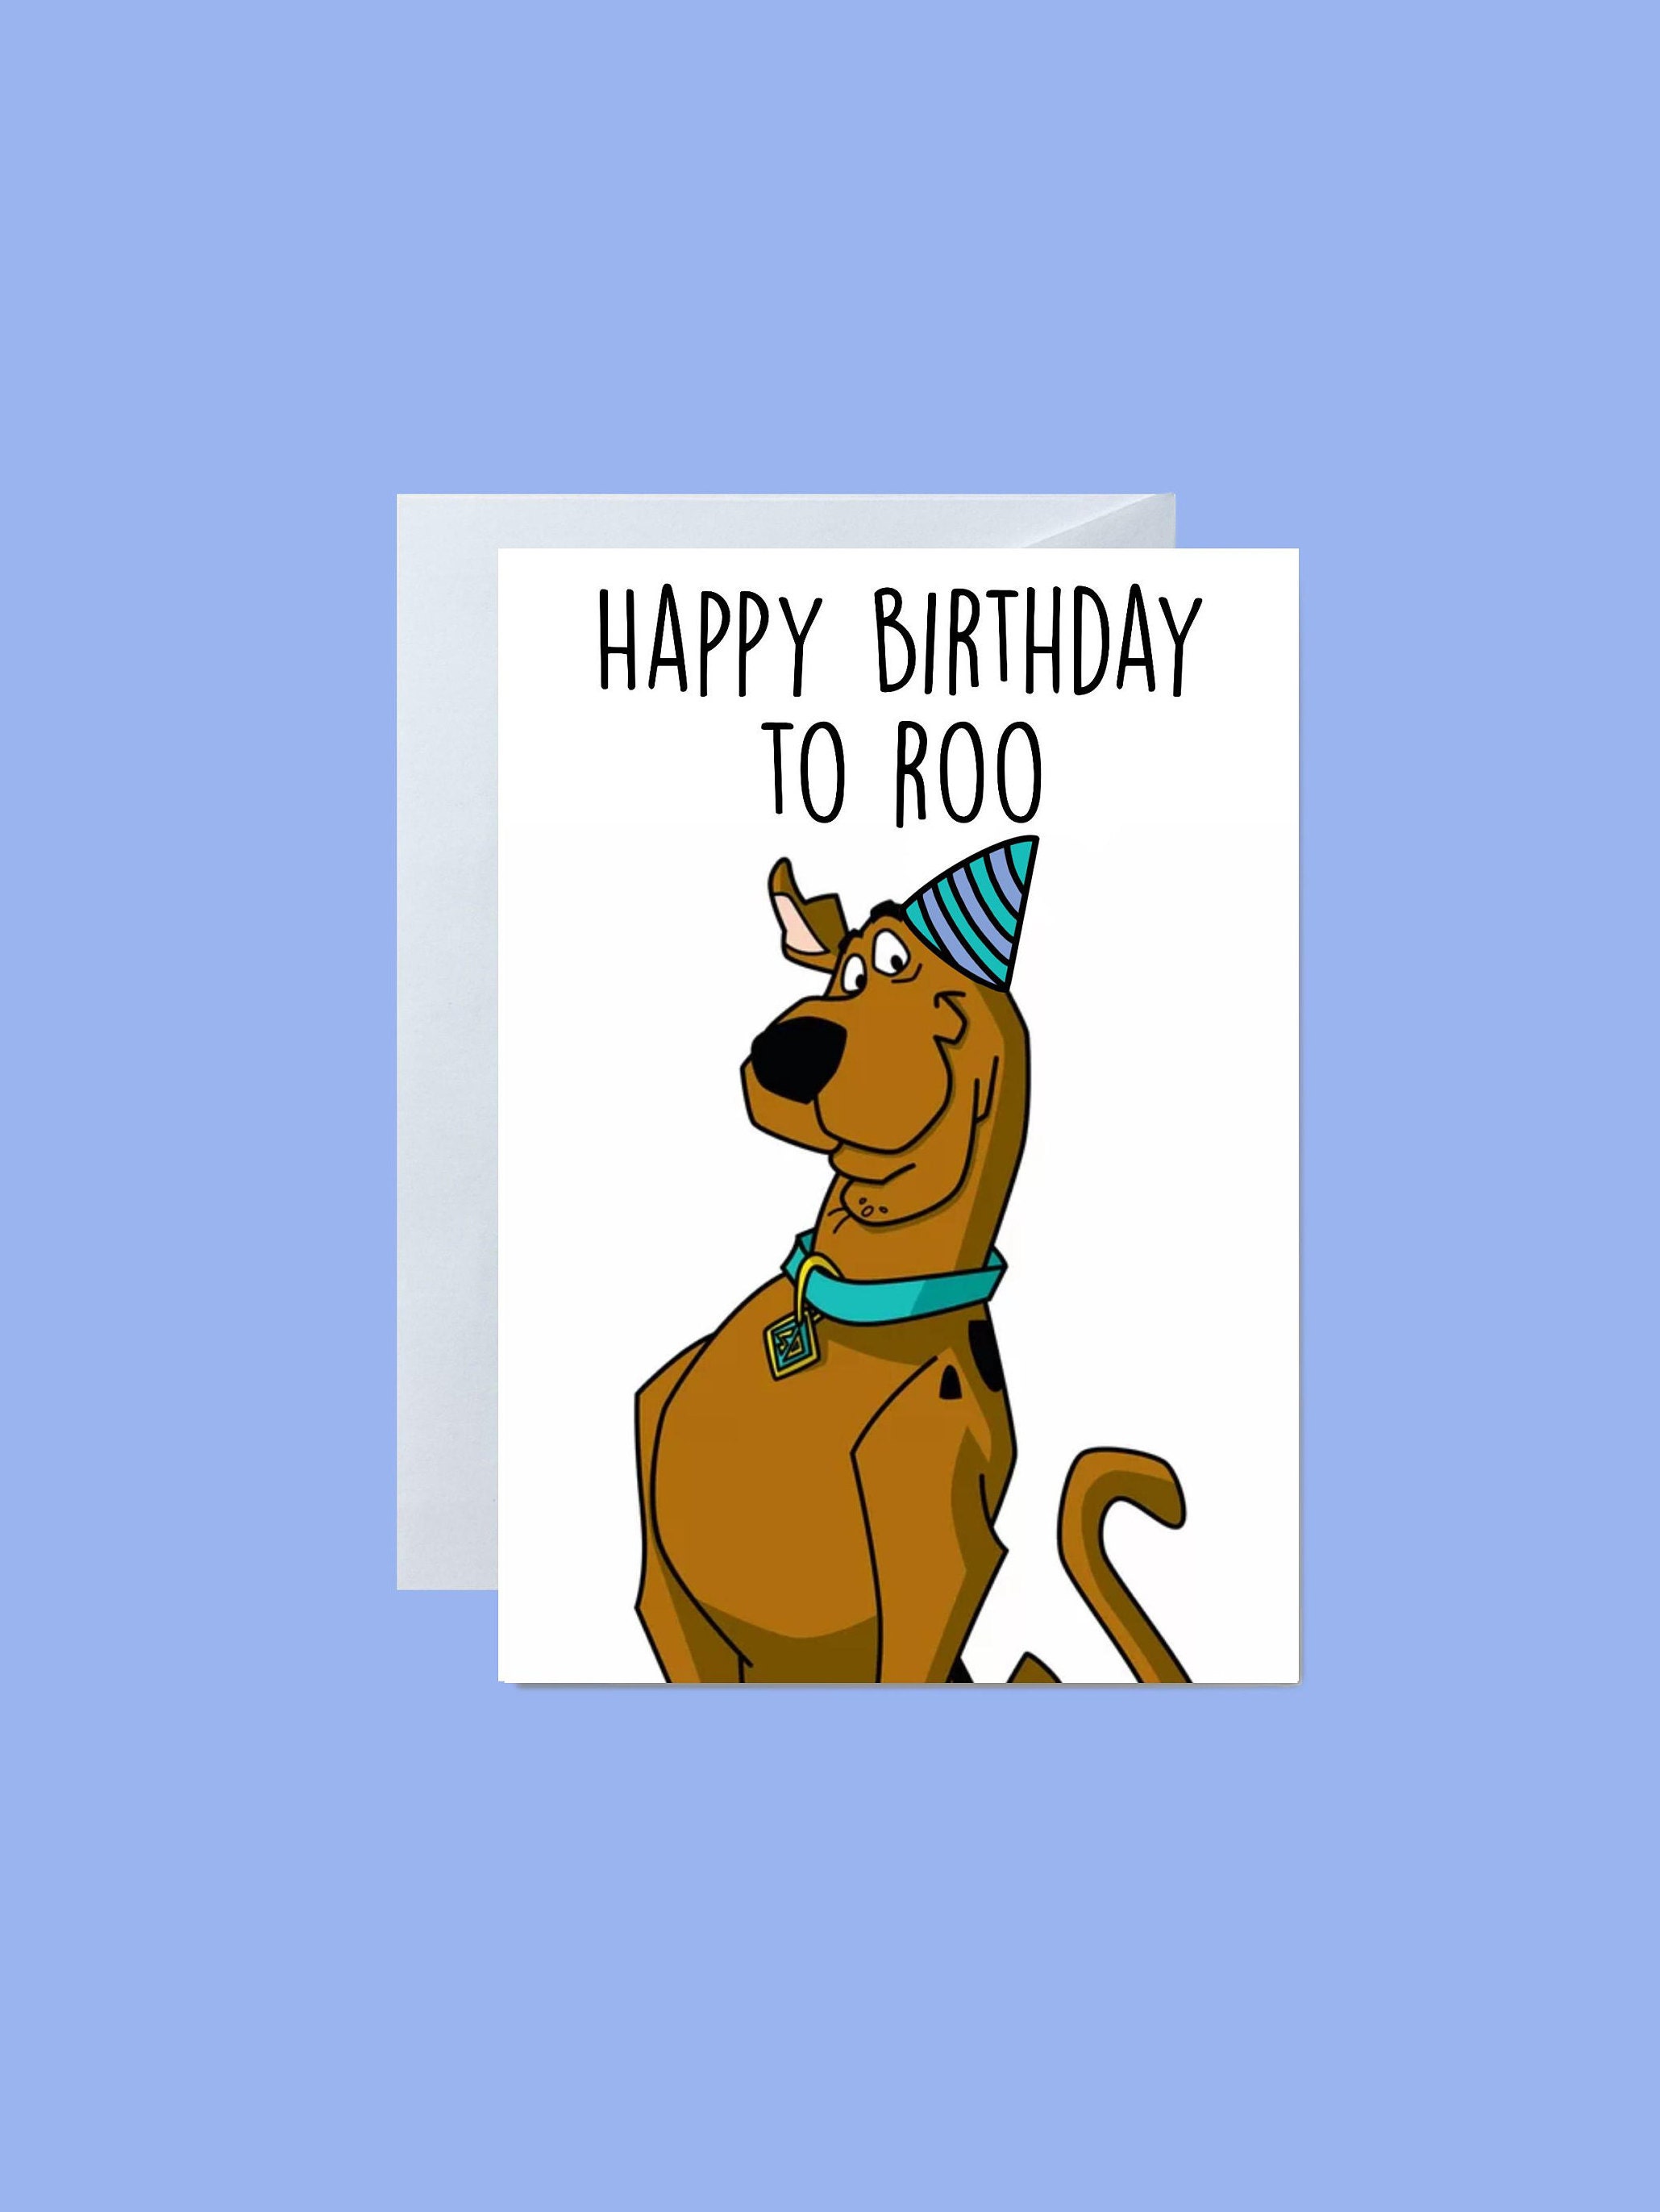 Scooby Doo Happy Birthday Meme